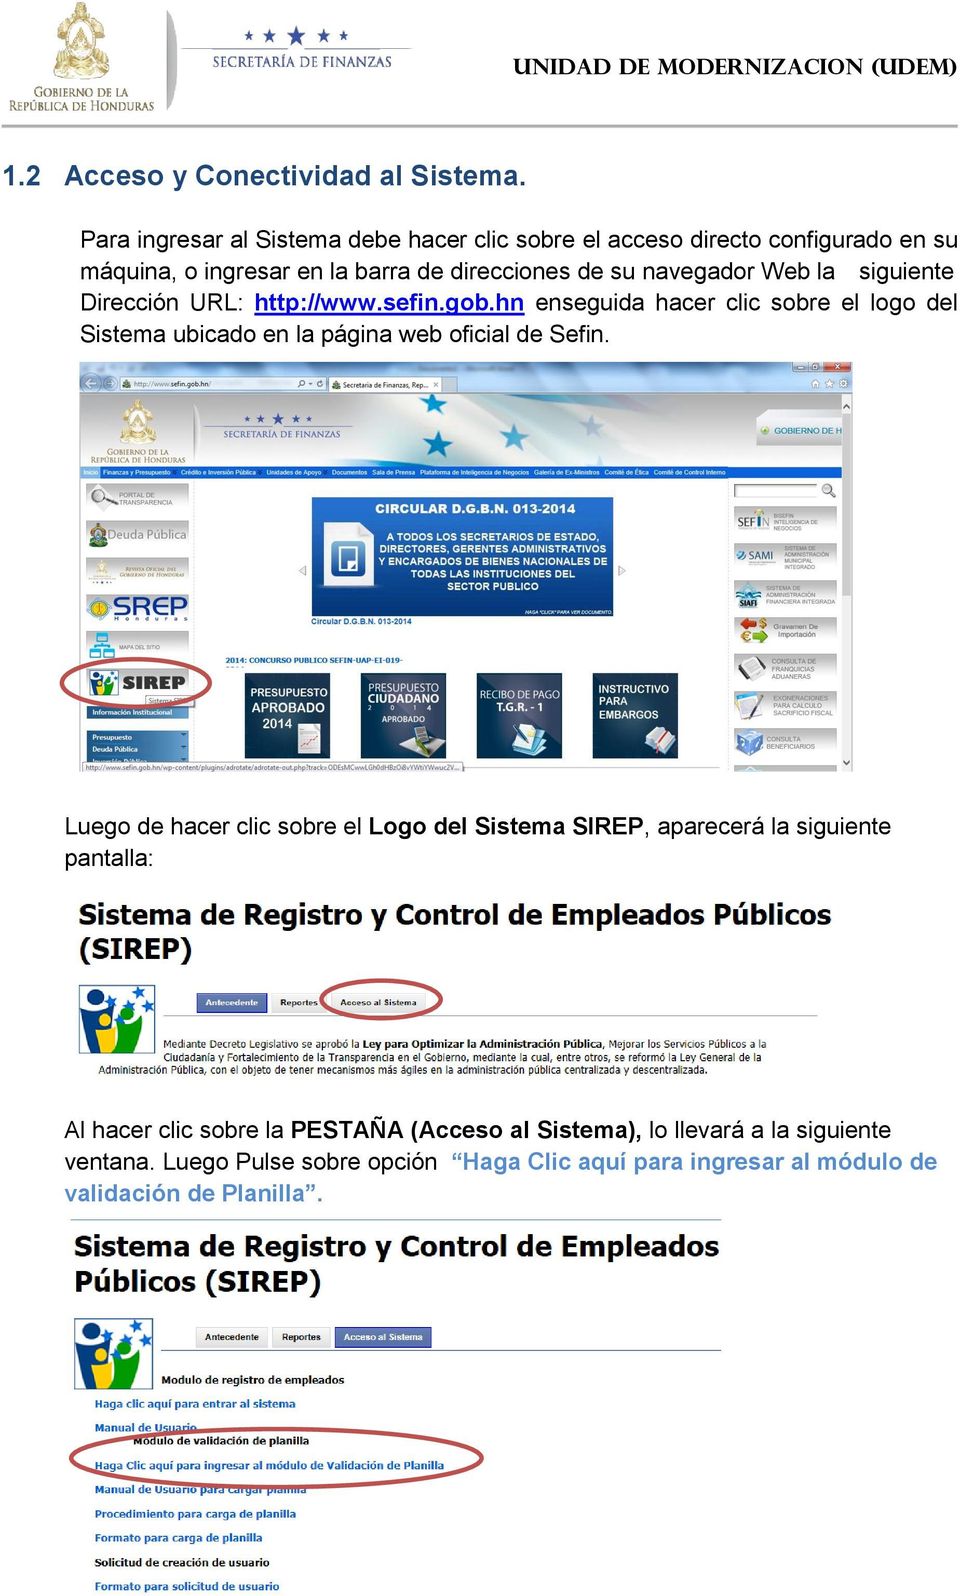 Web la siguiente Dirección URL: http://www.sefin.gob.hn enseguida hacer clic sobre el logo del Sistema ubicado en la página web oficial de Sefin.